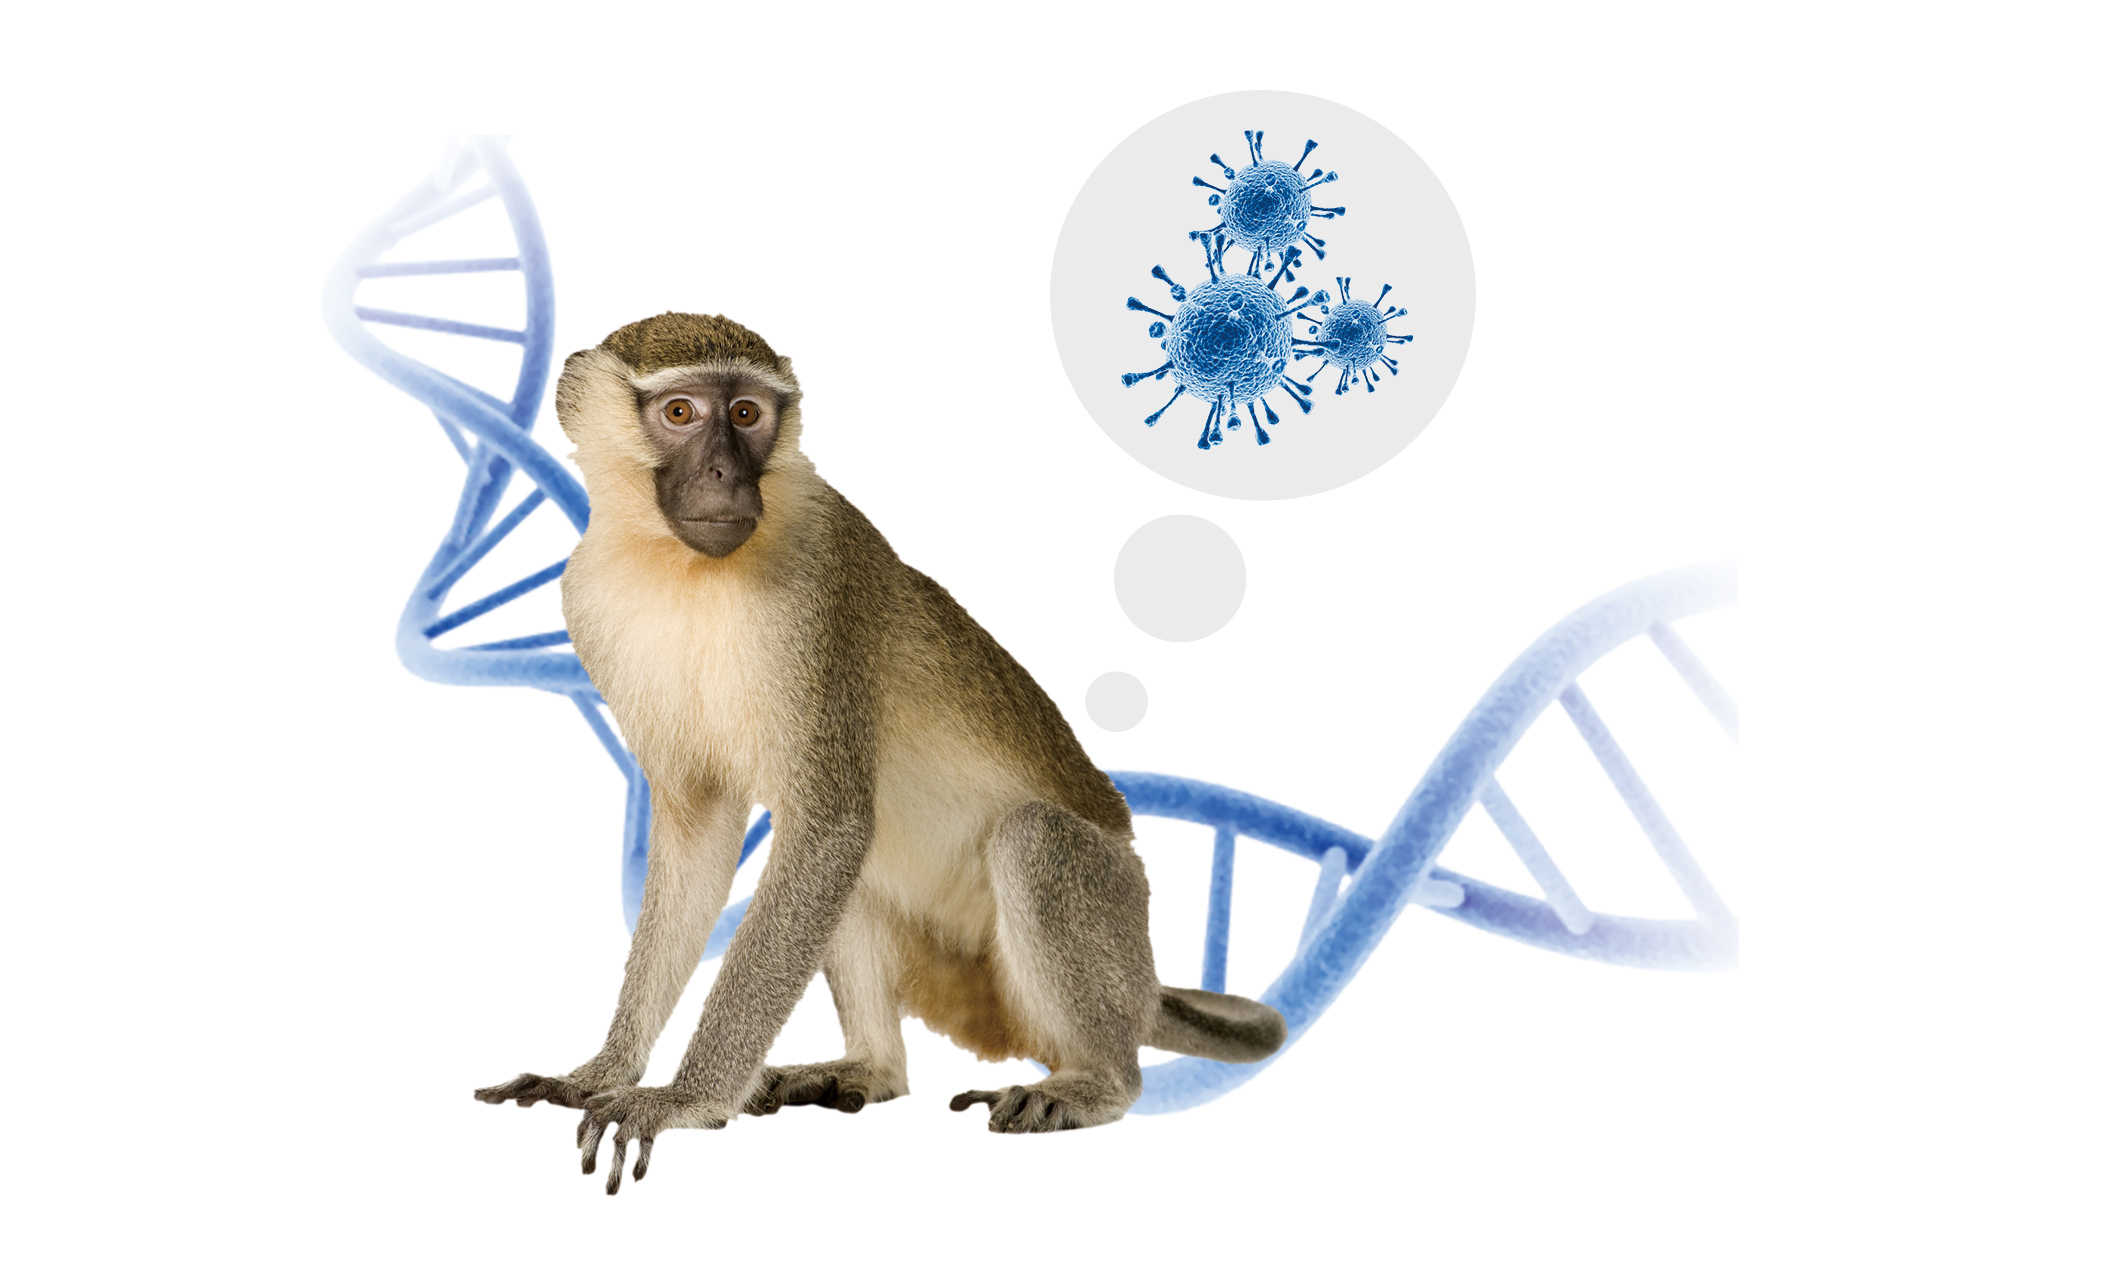 Focar de variolă maimuță: ce ar trebui să știm?